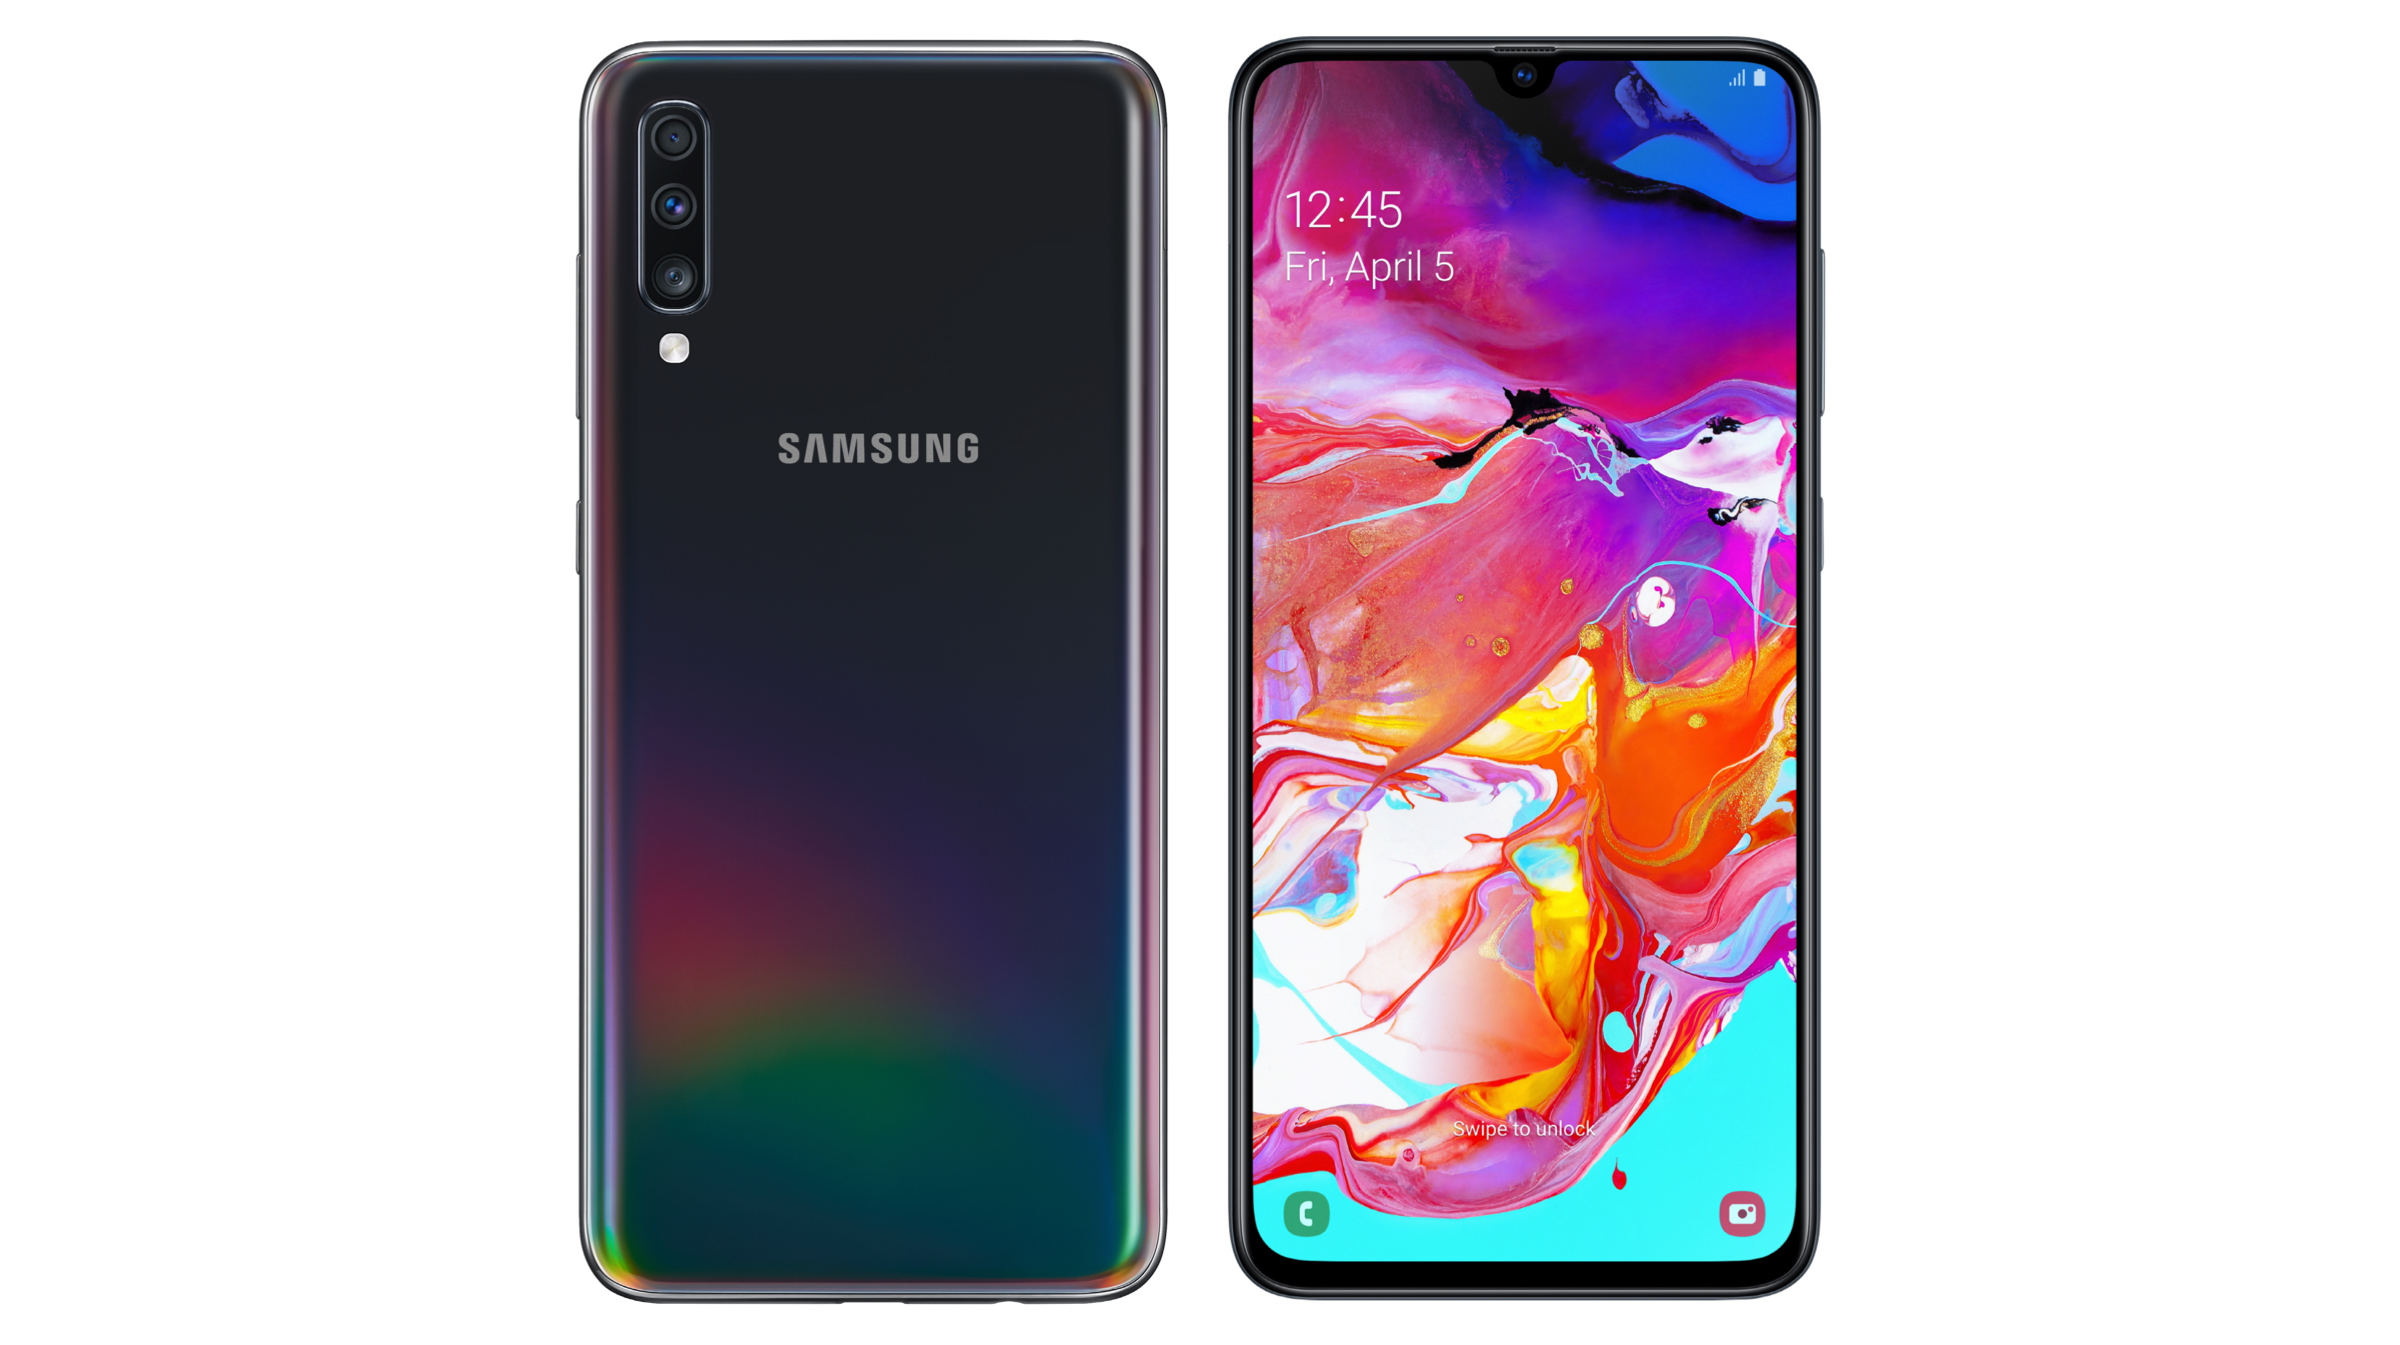 Samsung Sm A125fz Galaxy A12